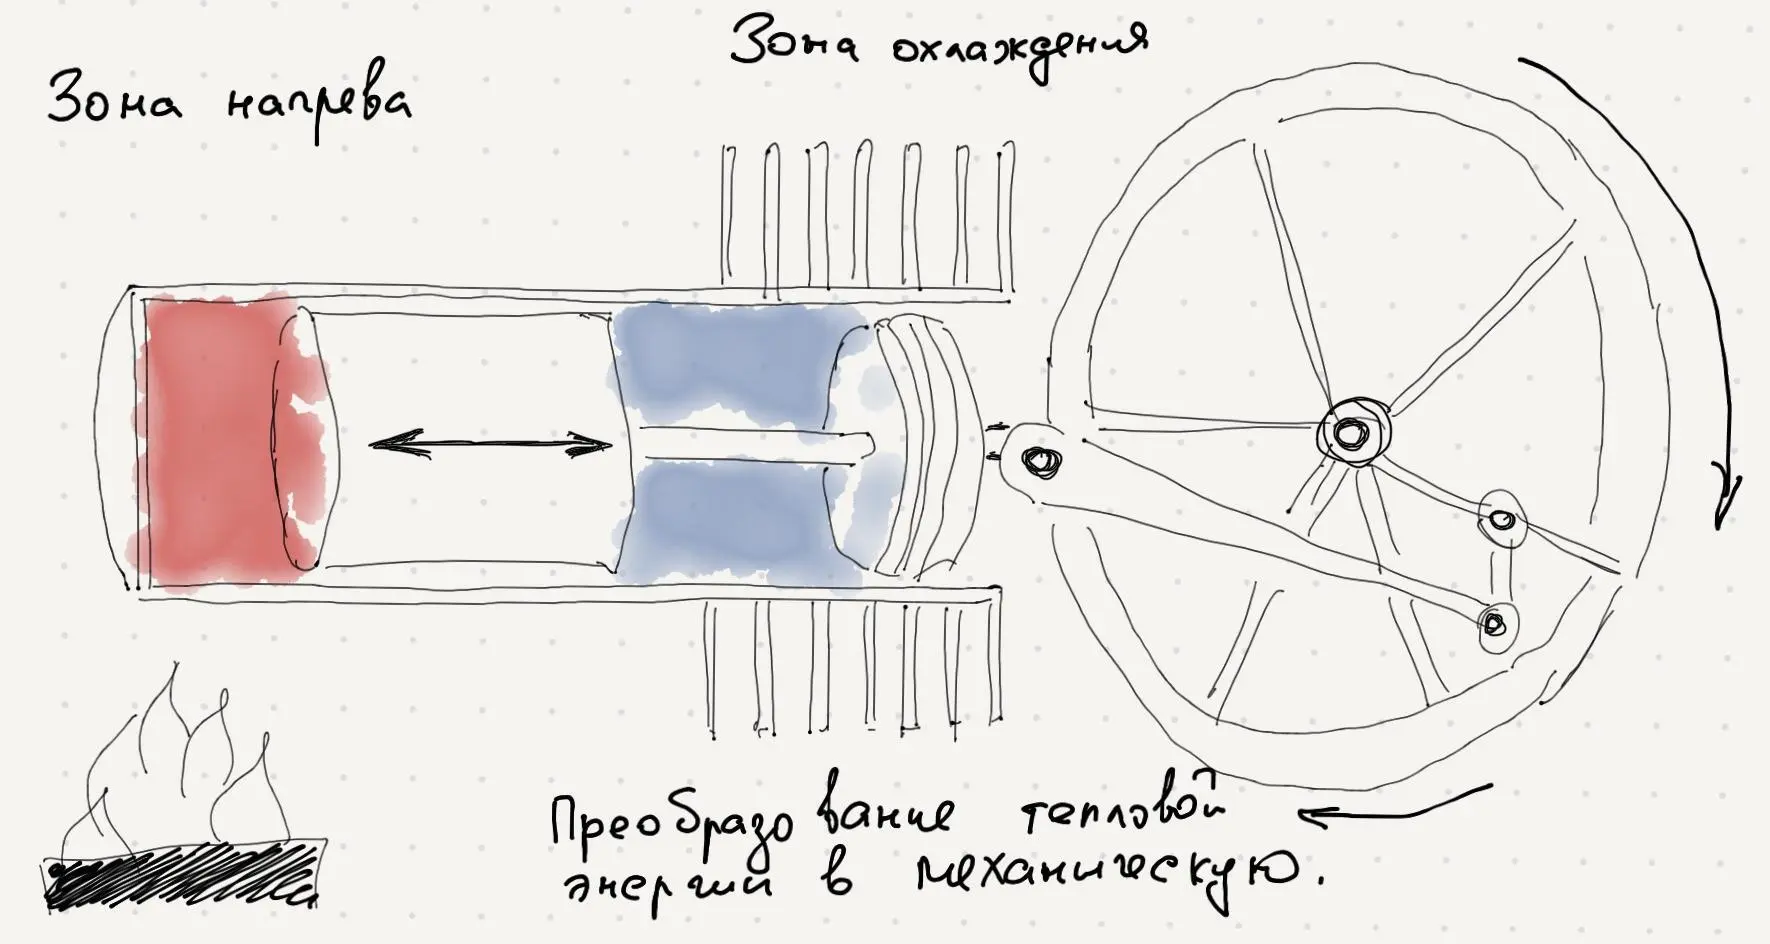 Схема двигателя Стирлинга широко распространенная в мире нашей книги рисунок - фото 1